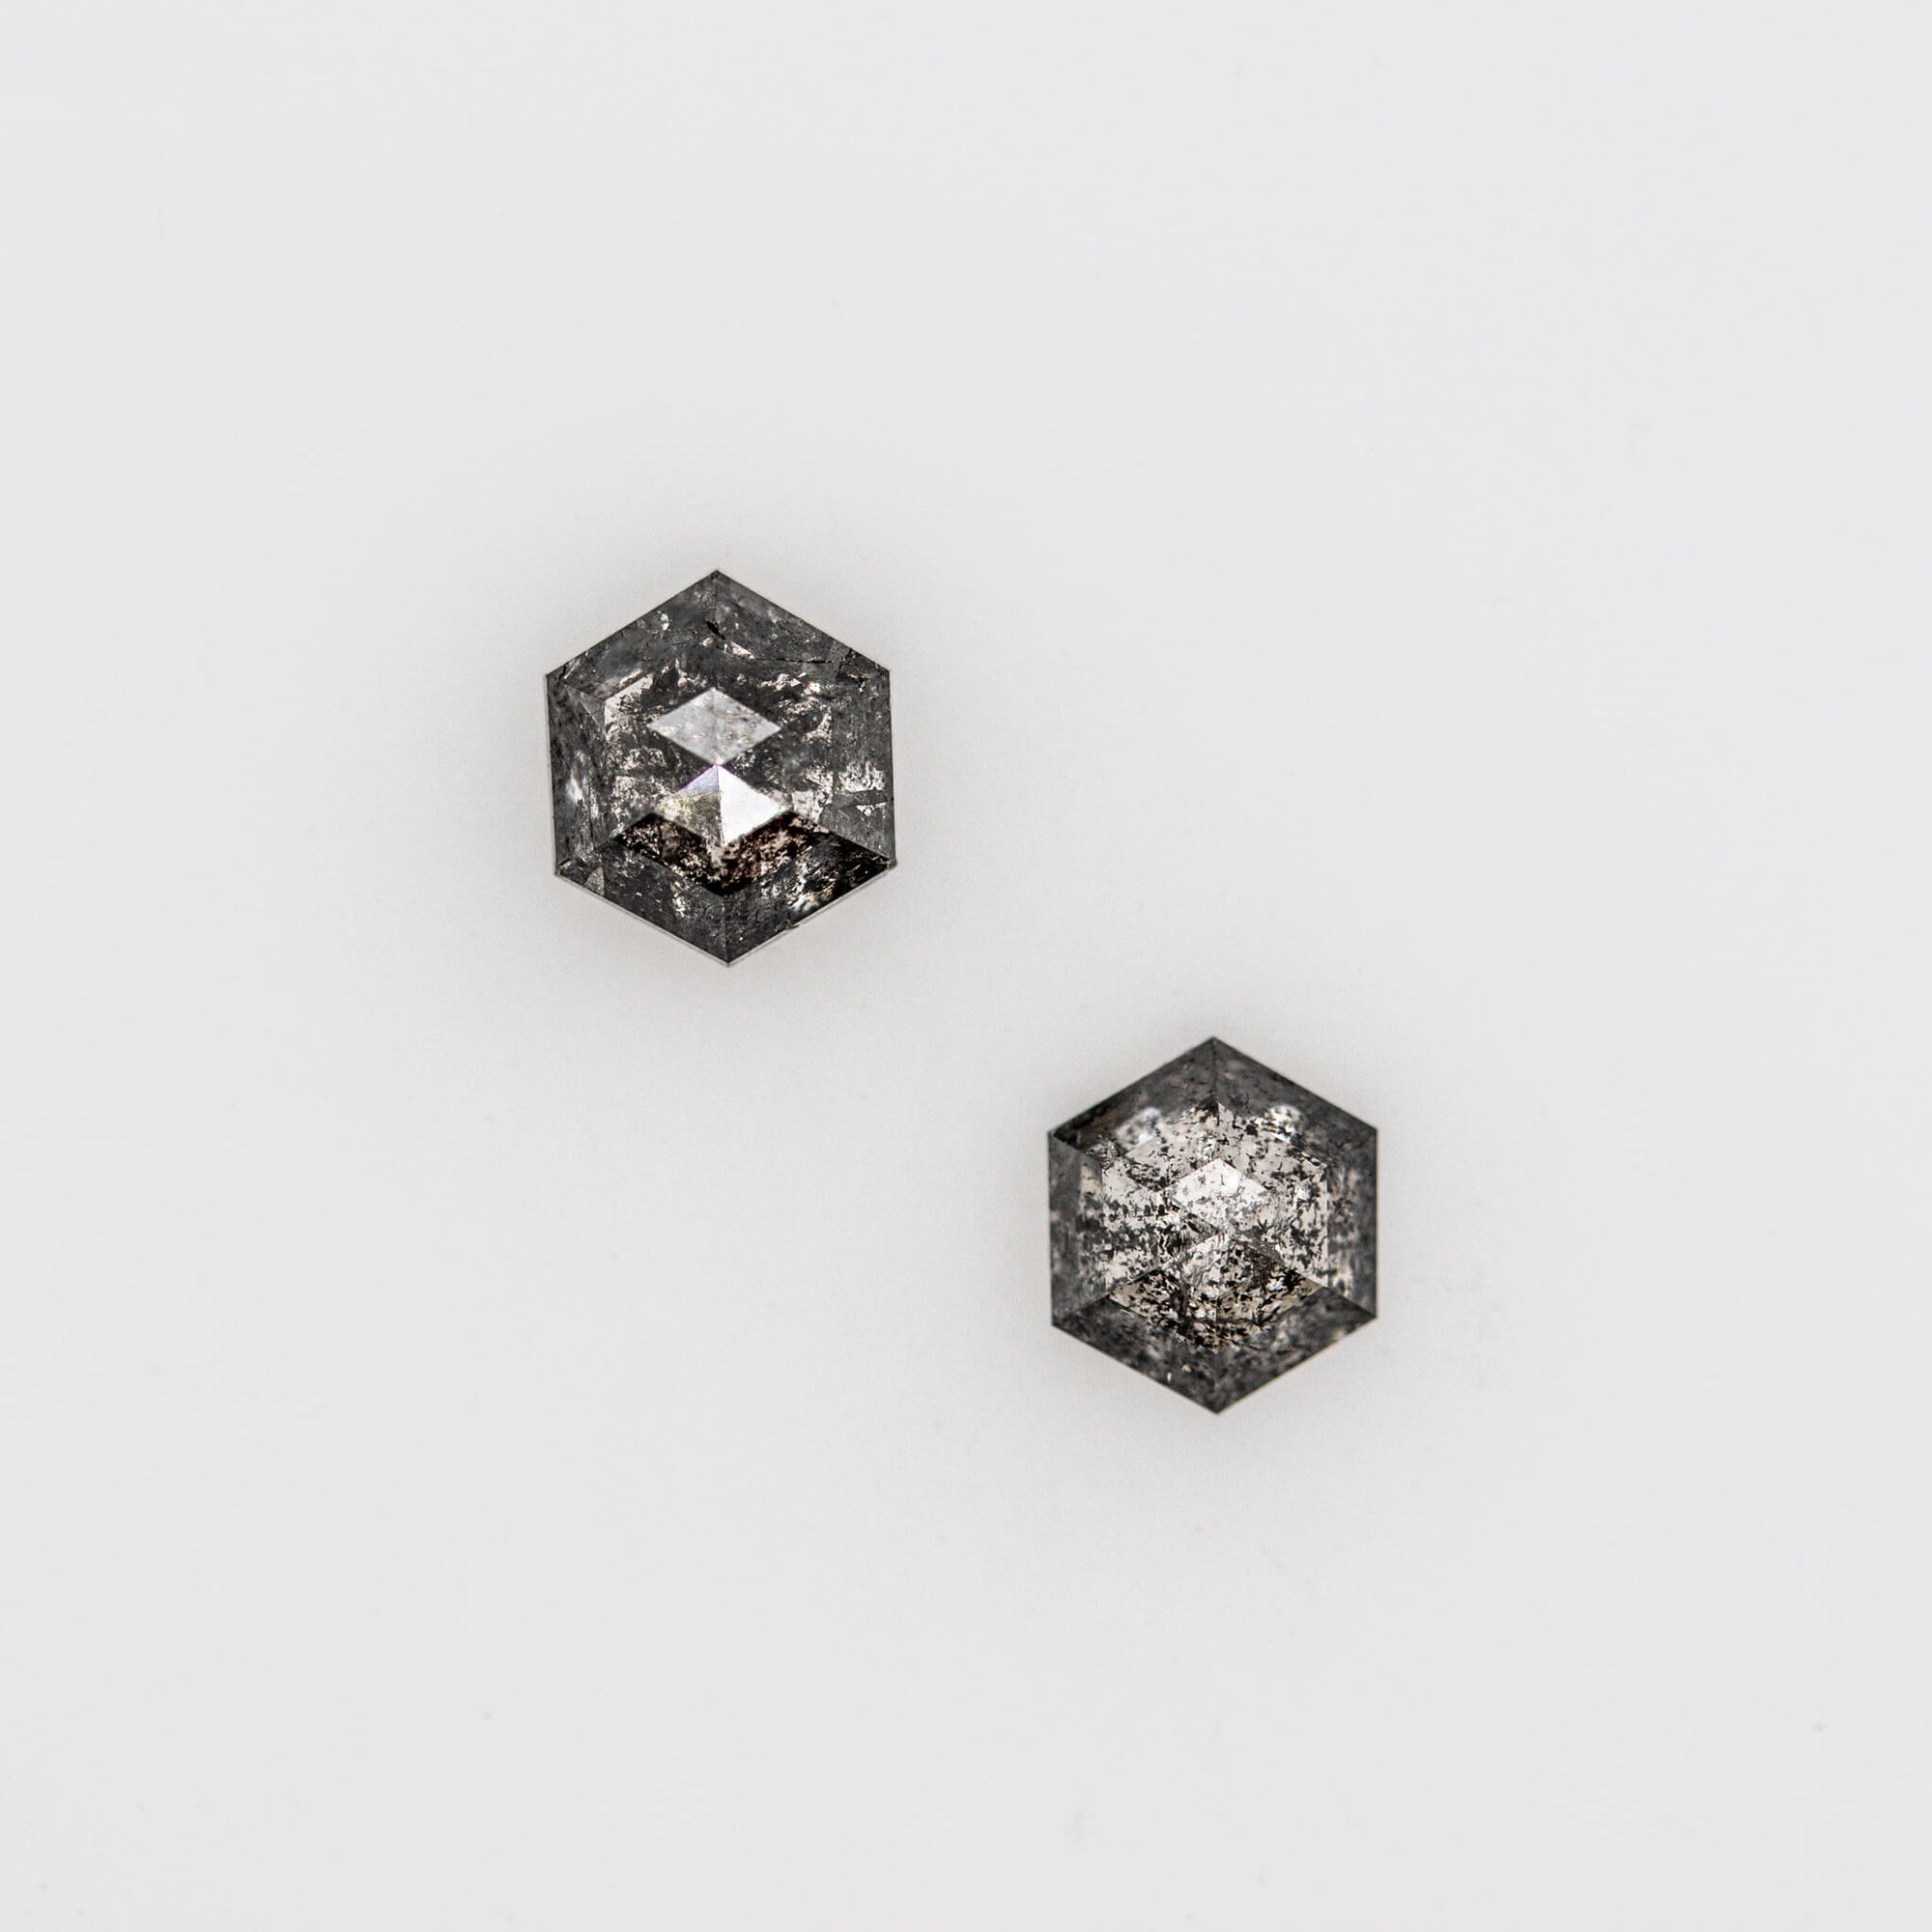 Ld020 Salt and Pepper Hexagon Diamond